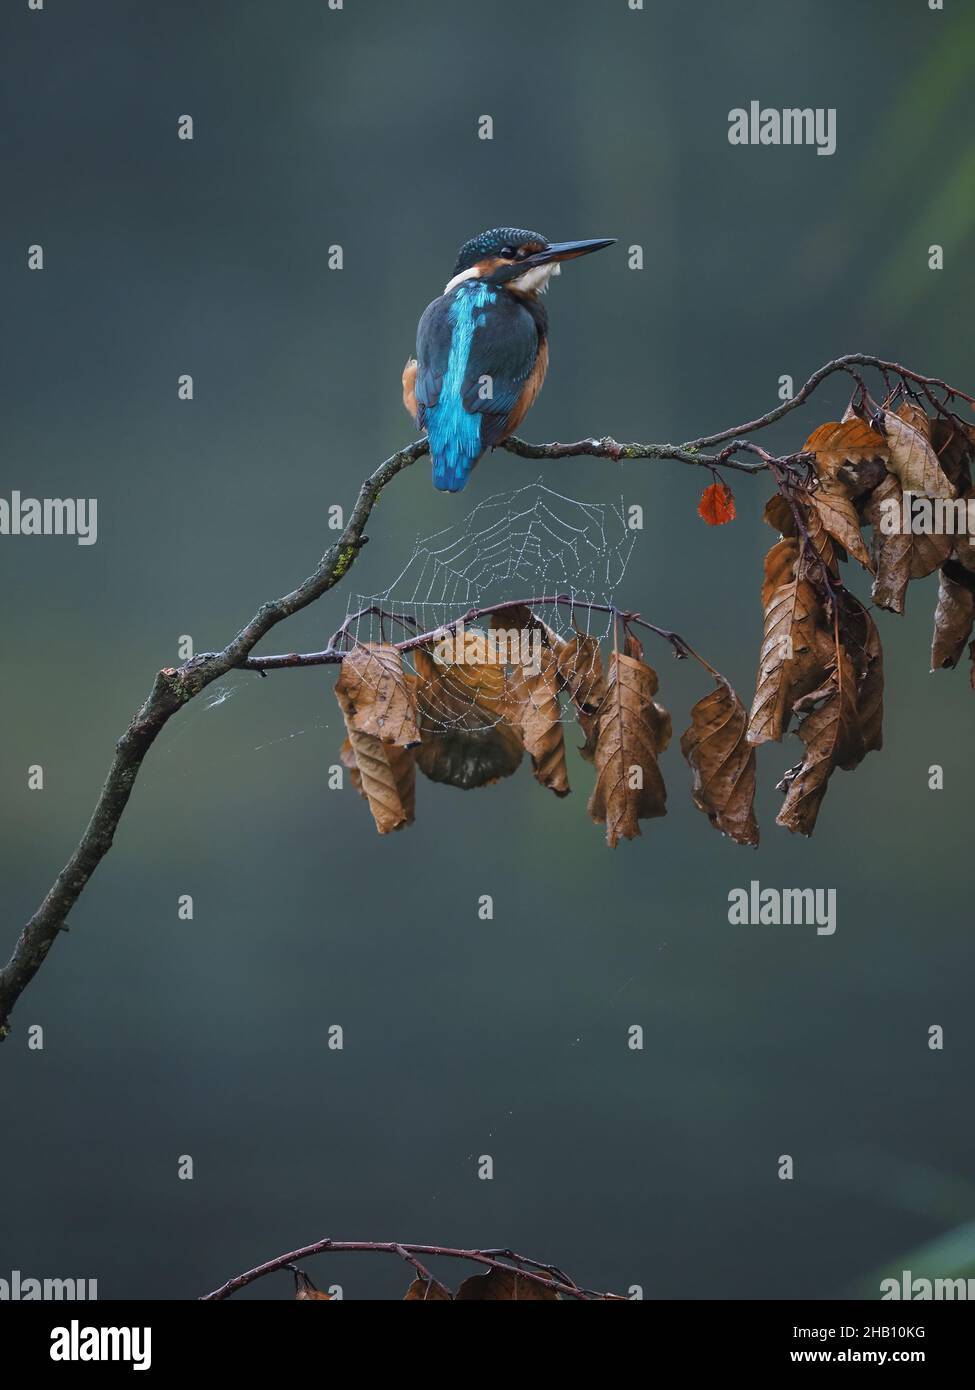 Kingfisher est un oiseau inimitable dans la campagne britannique.Un flash de bleu électrique autour de l'eau est un kingfisher!Ils plongent pour attraper des proies. Banque D'Images